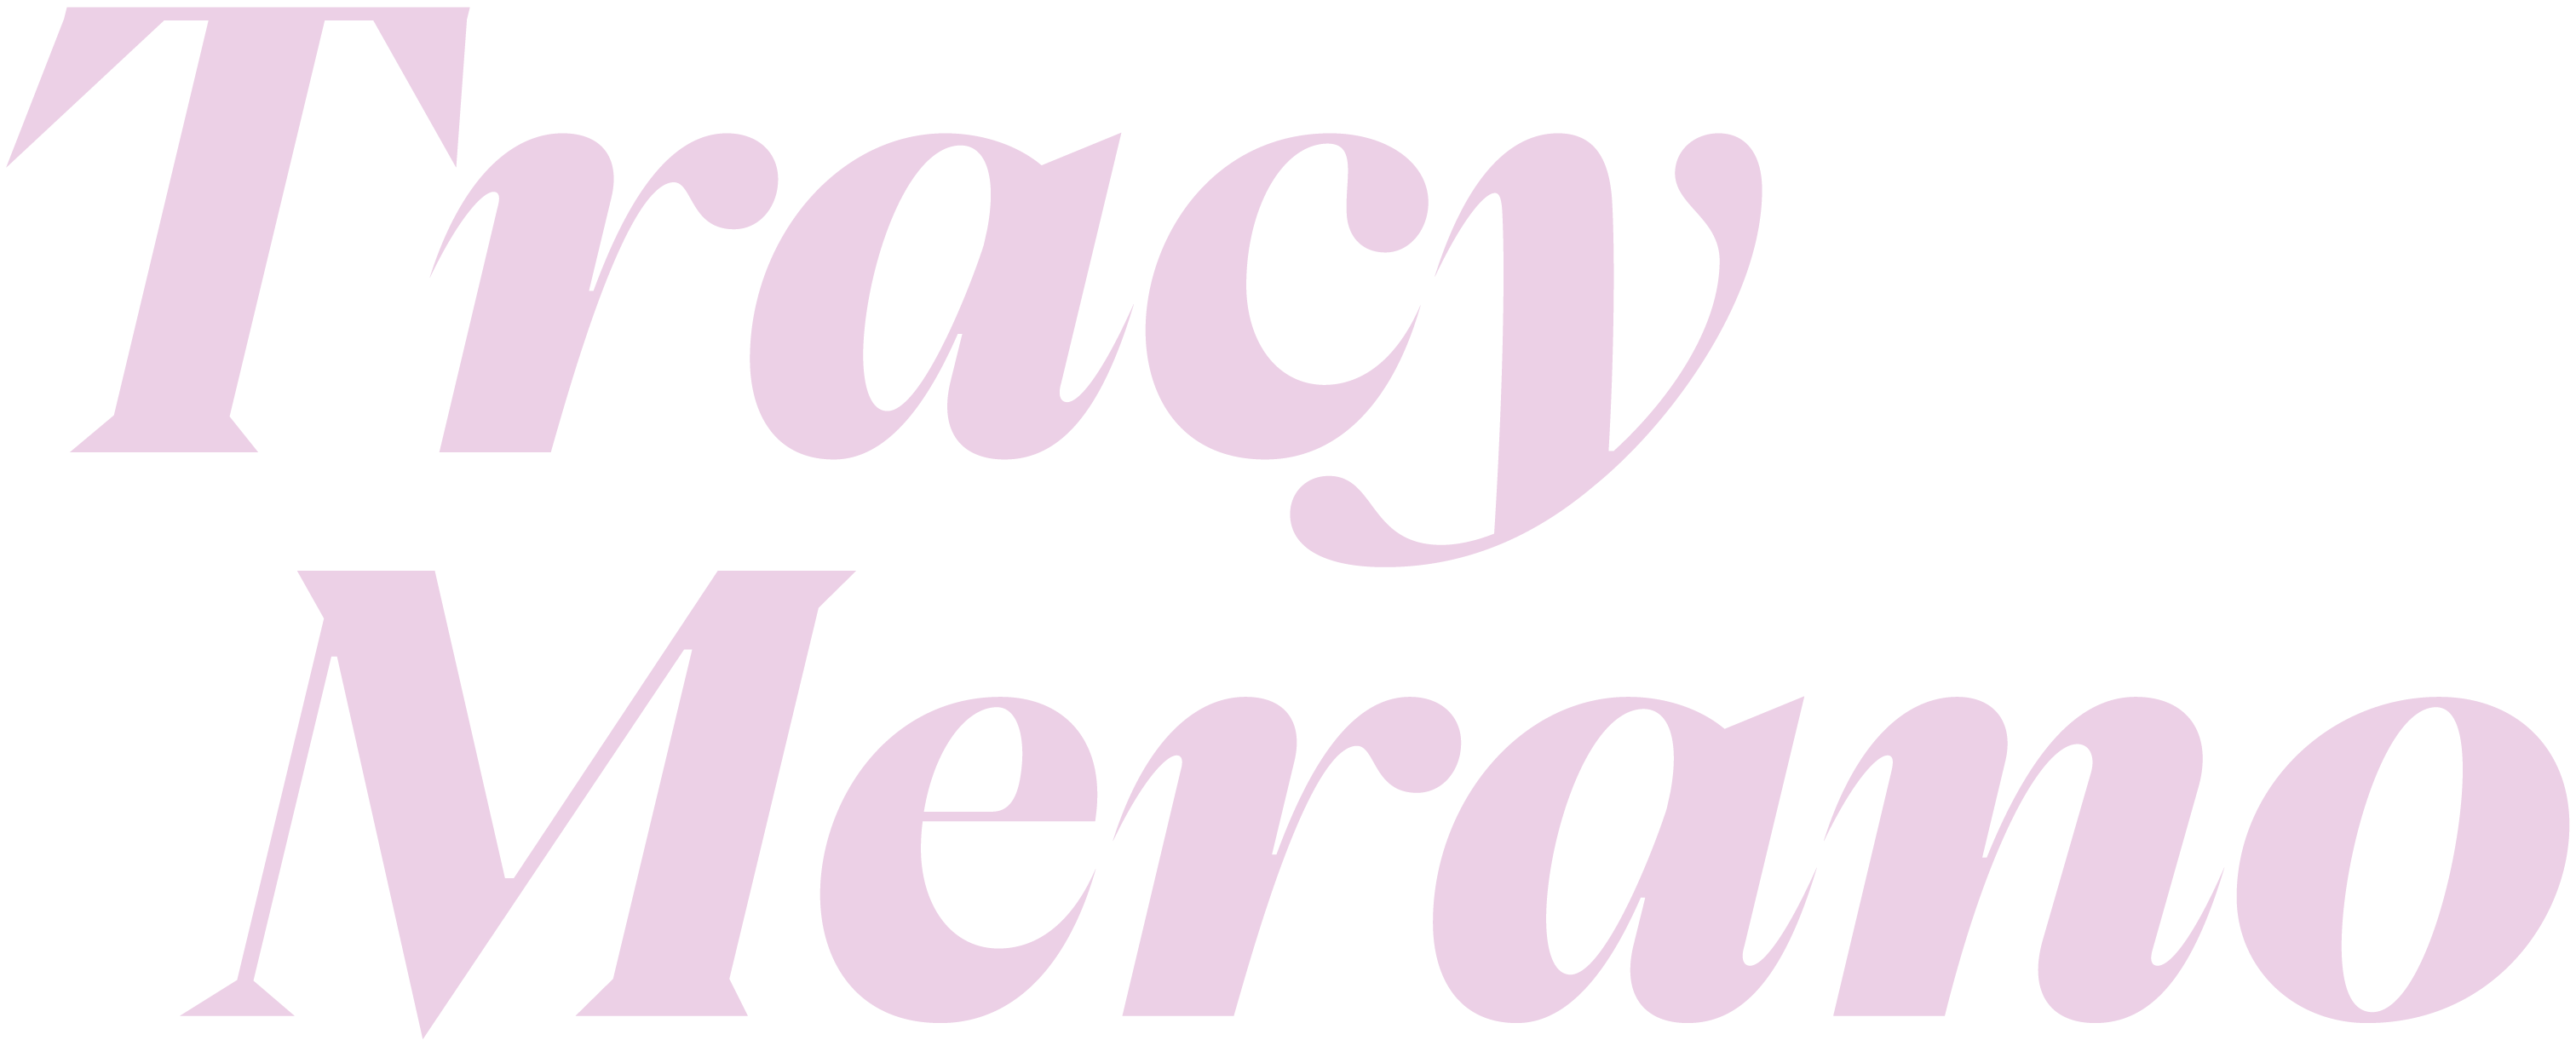 Tracy Merano